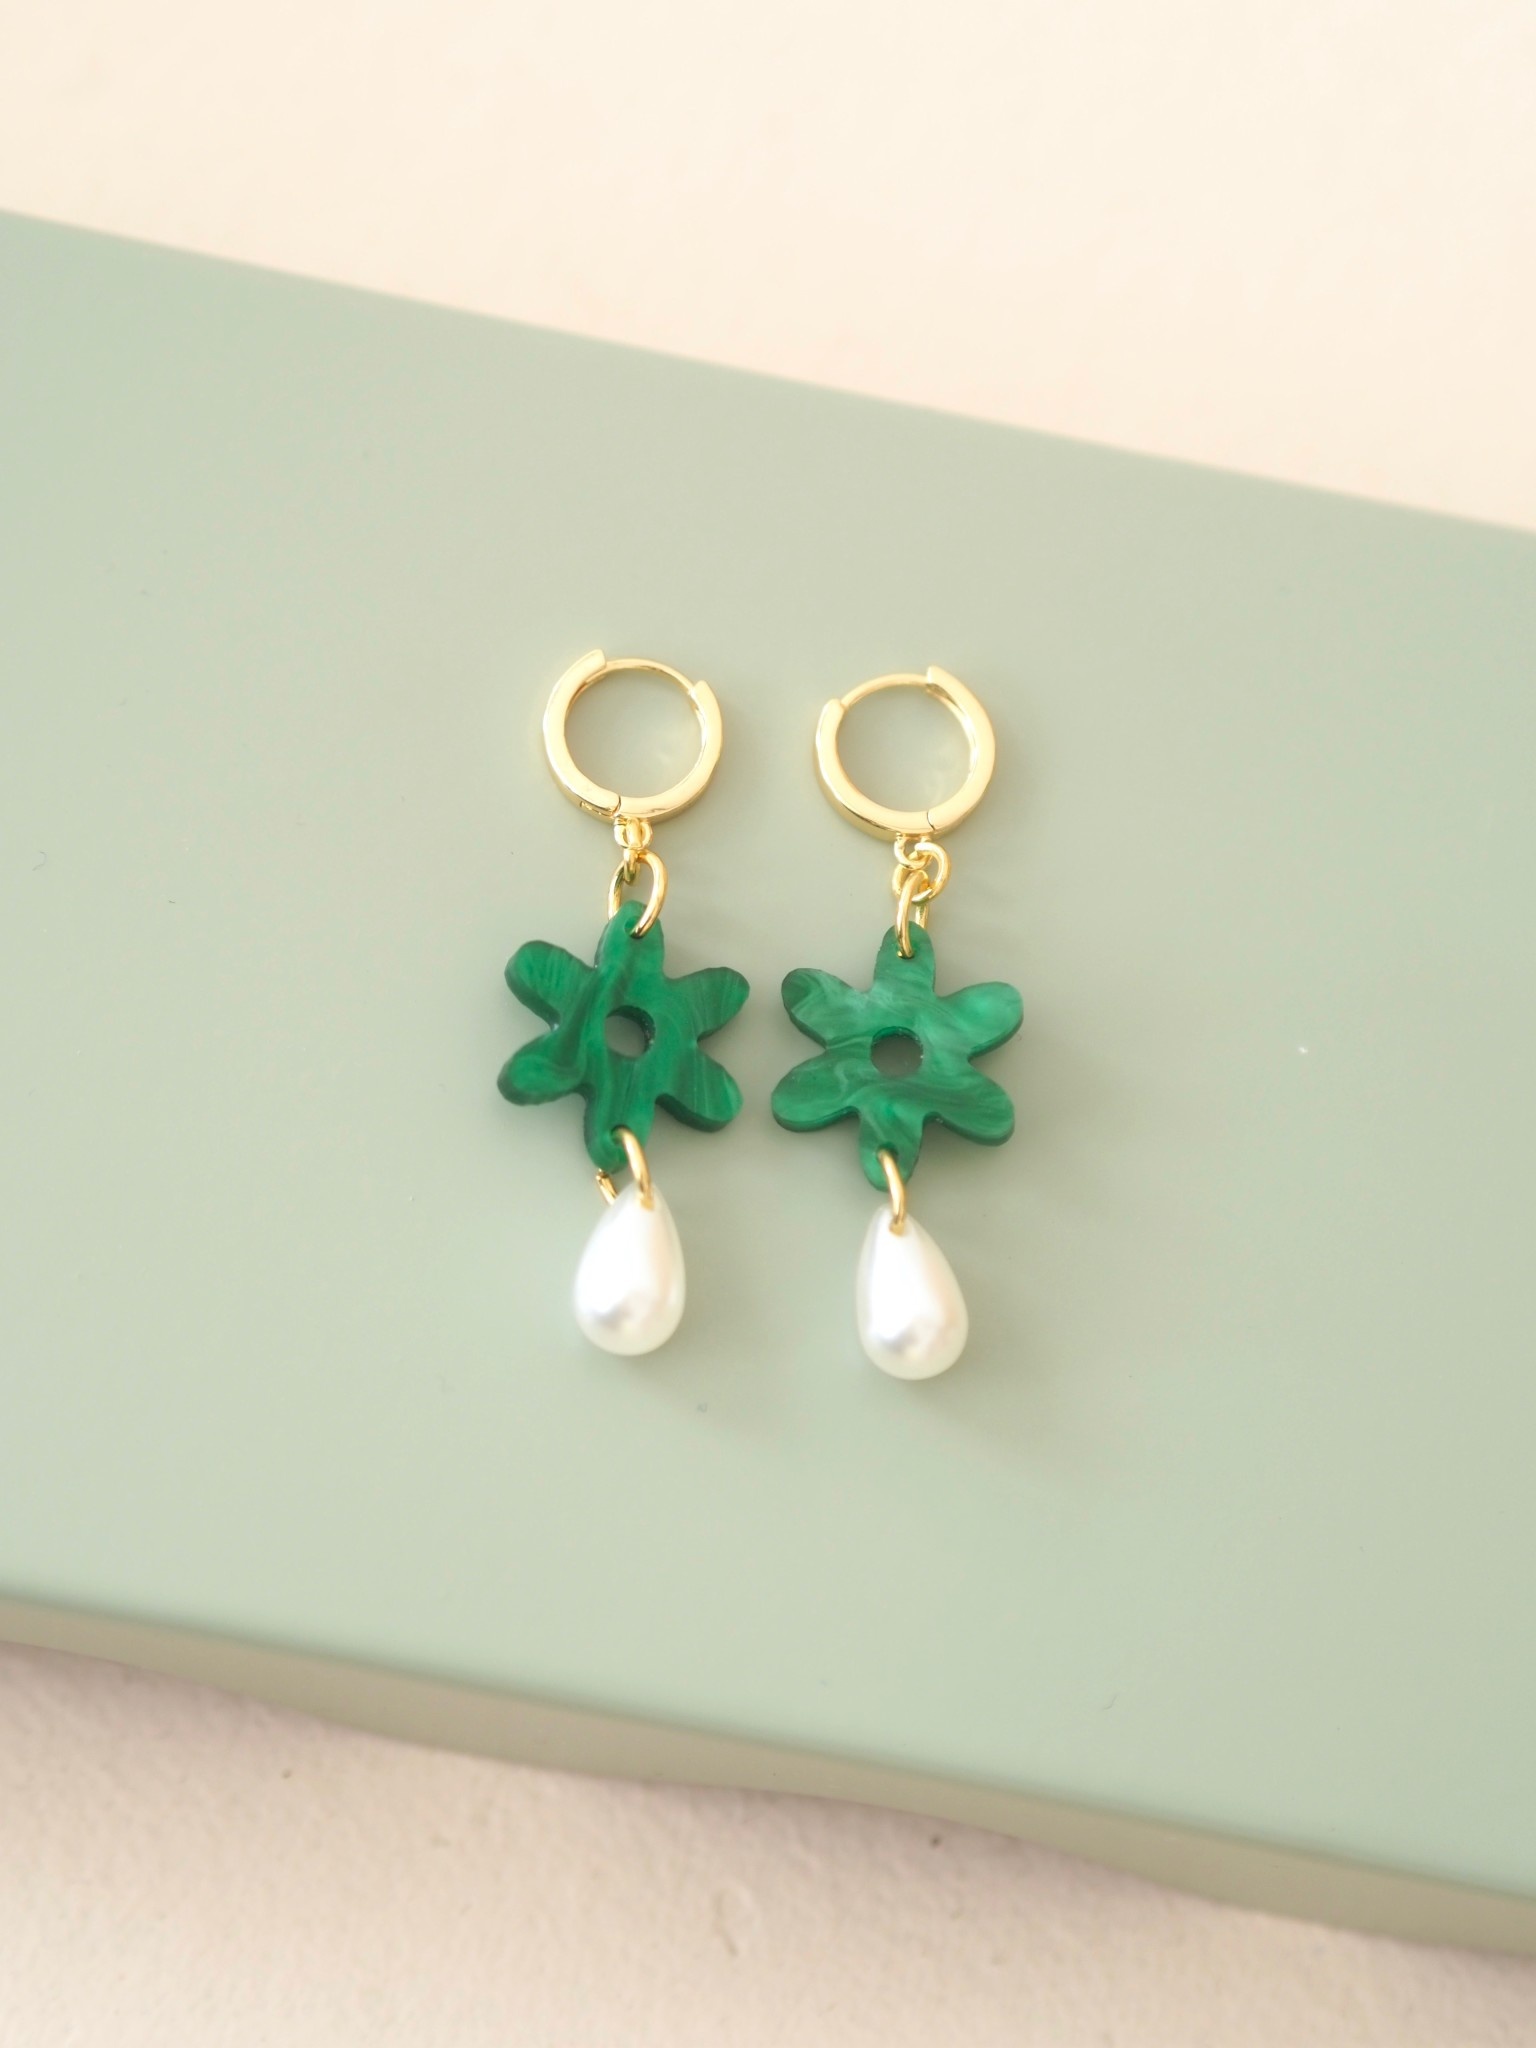 Daisy Earrings - Emerald